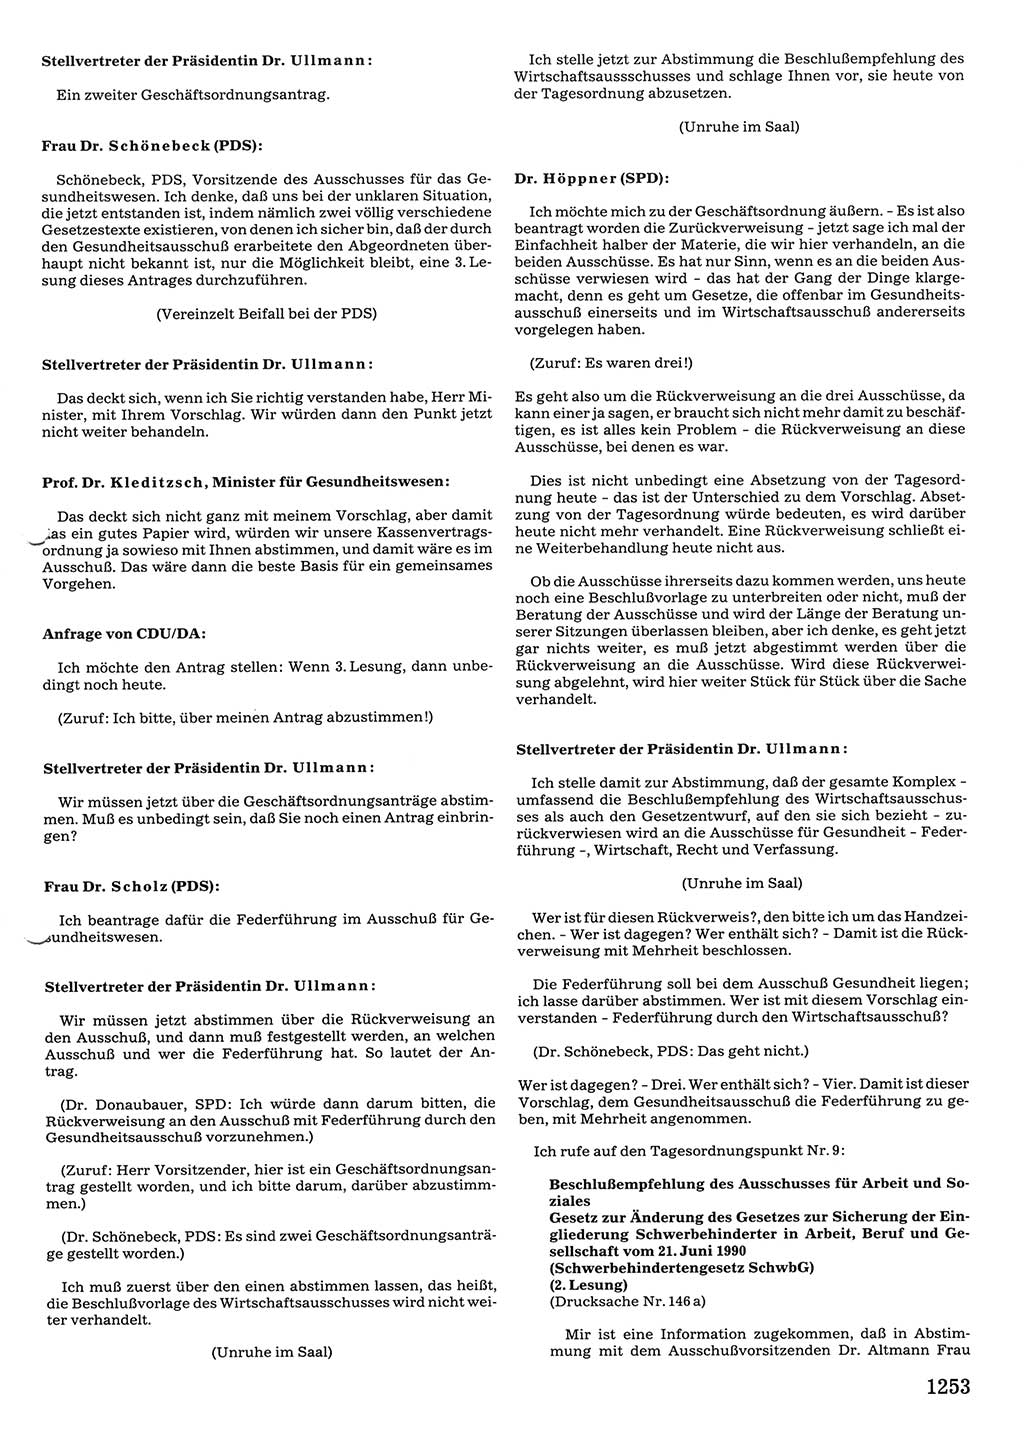 Tagungen der Volkskammer (VK) der Deutschen Demokratischen Republik (DDR), 10. Wahlperiode 1990, Seite 1253 (VK. DDR 10. WP. 1990, Prot. Tg. 1-38, 5.4.-2.10.1990, S. 1253)